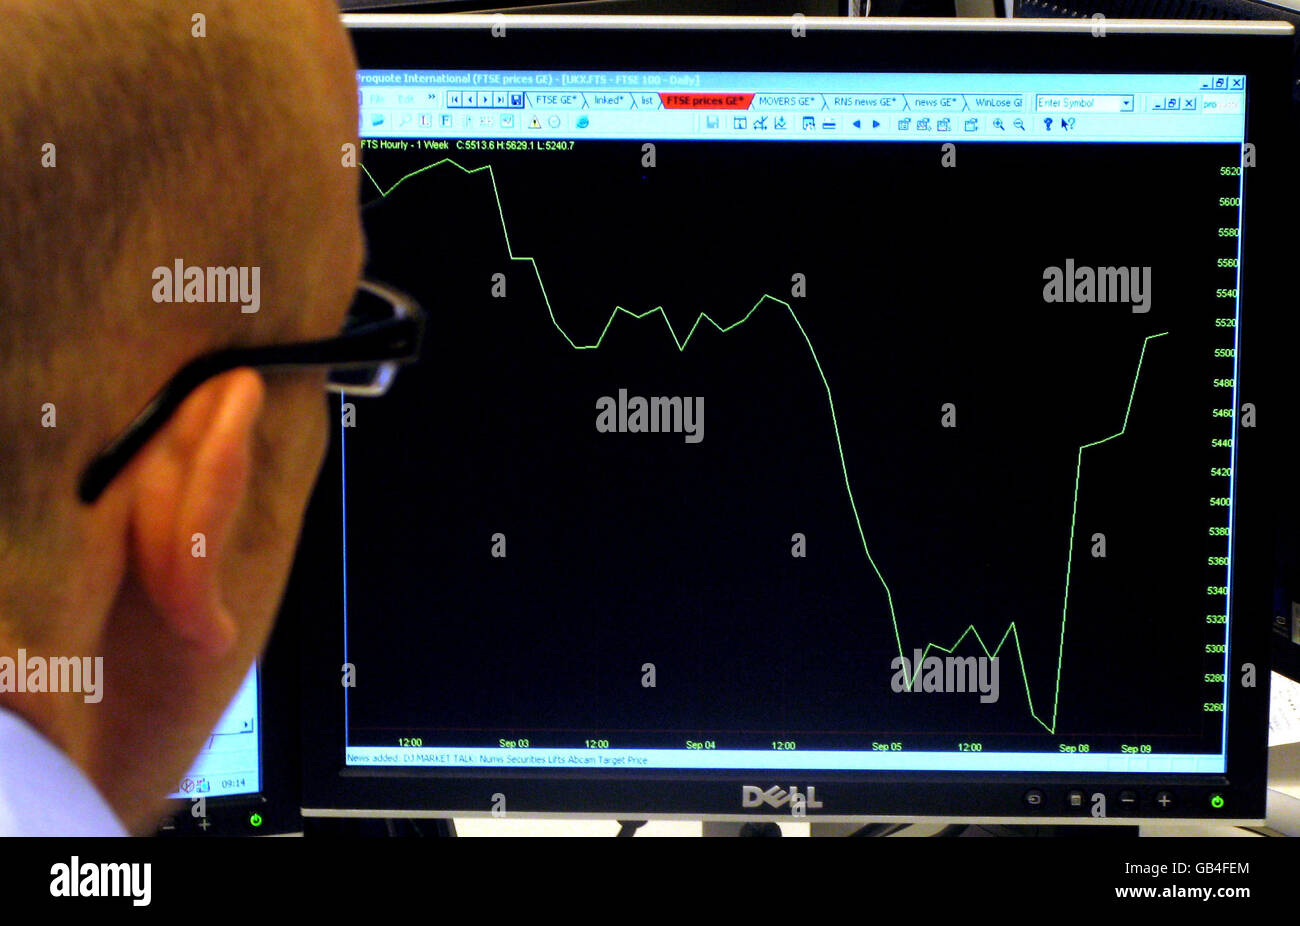 Ein Büroangestellter sieht sich eine Grafik des FTSE 100-Index an, nachdem der normale Aktienhandel wieder aufgenommen wurde, nachdem ein Computeranfall an der Londoner Börse den größten Teil des gestrigen Geschäfts ausgelöscht hatte. Stockfoto